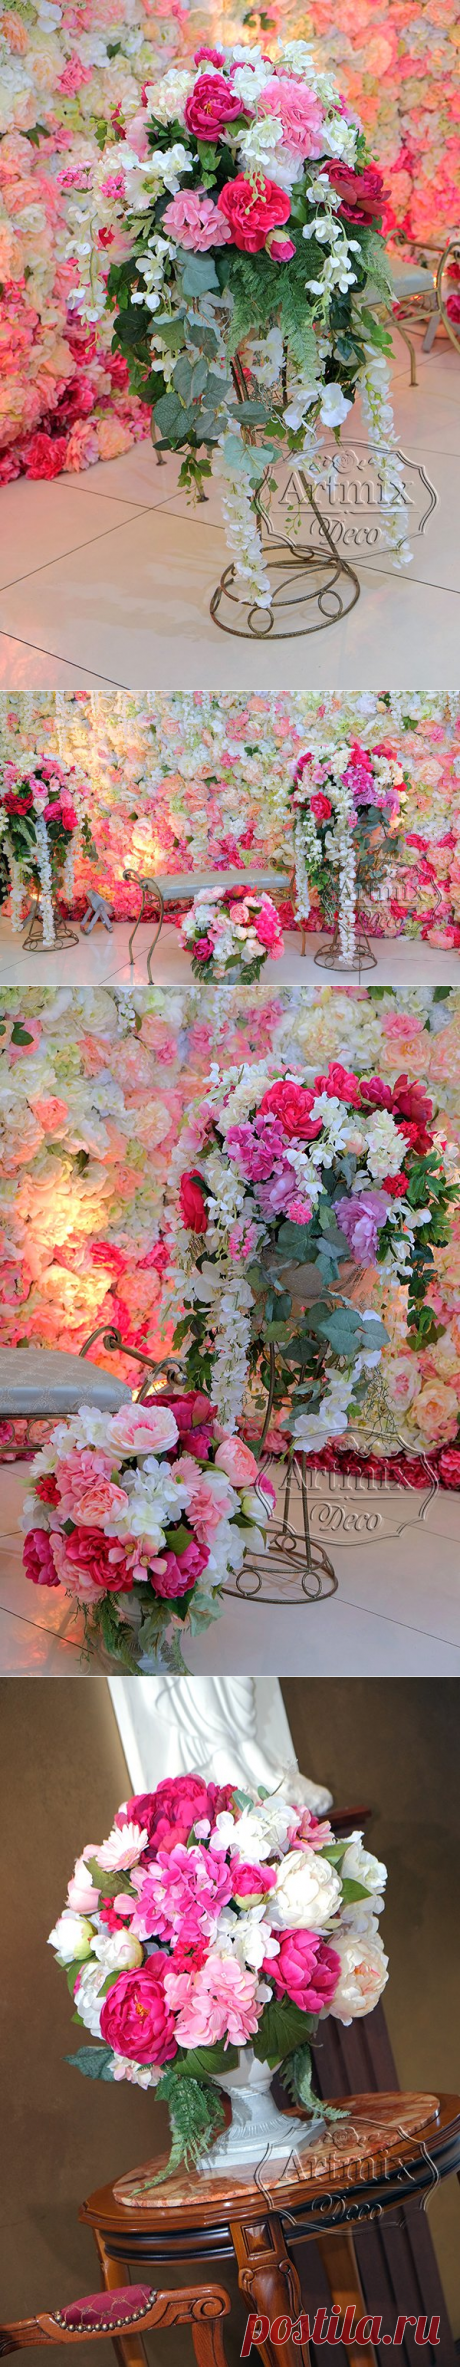 Фон из цветов для свадебной фотосессии | Аренда фотозоны на свадьбу - Артмикс Декор